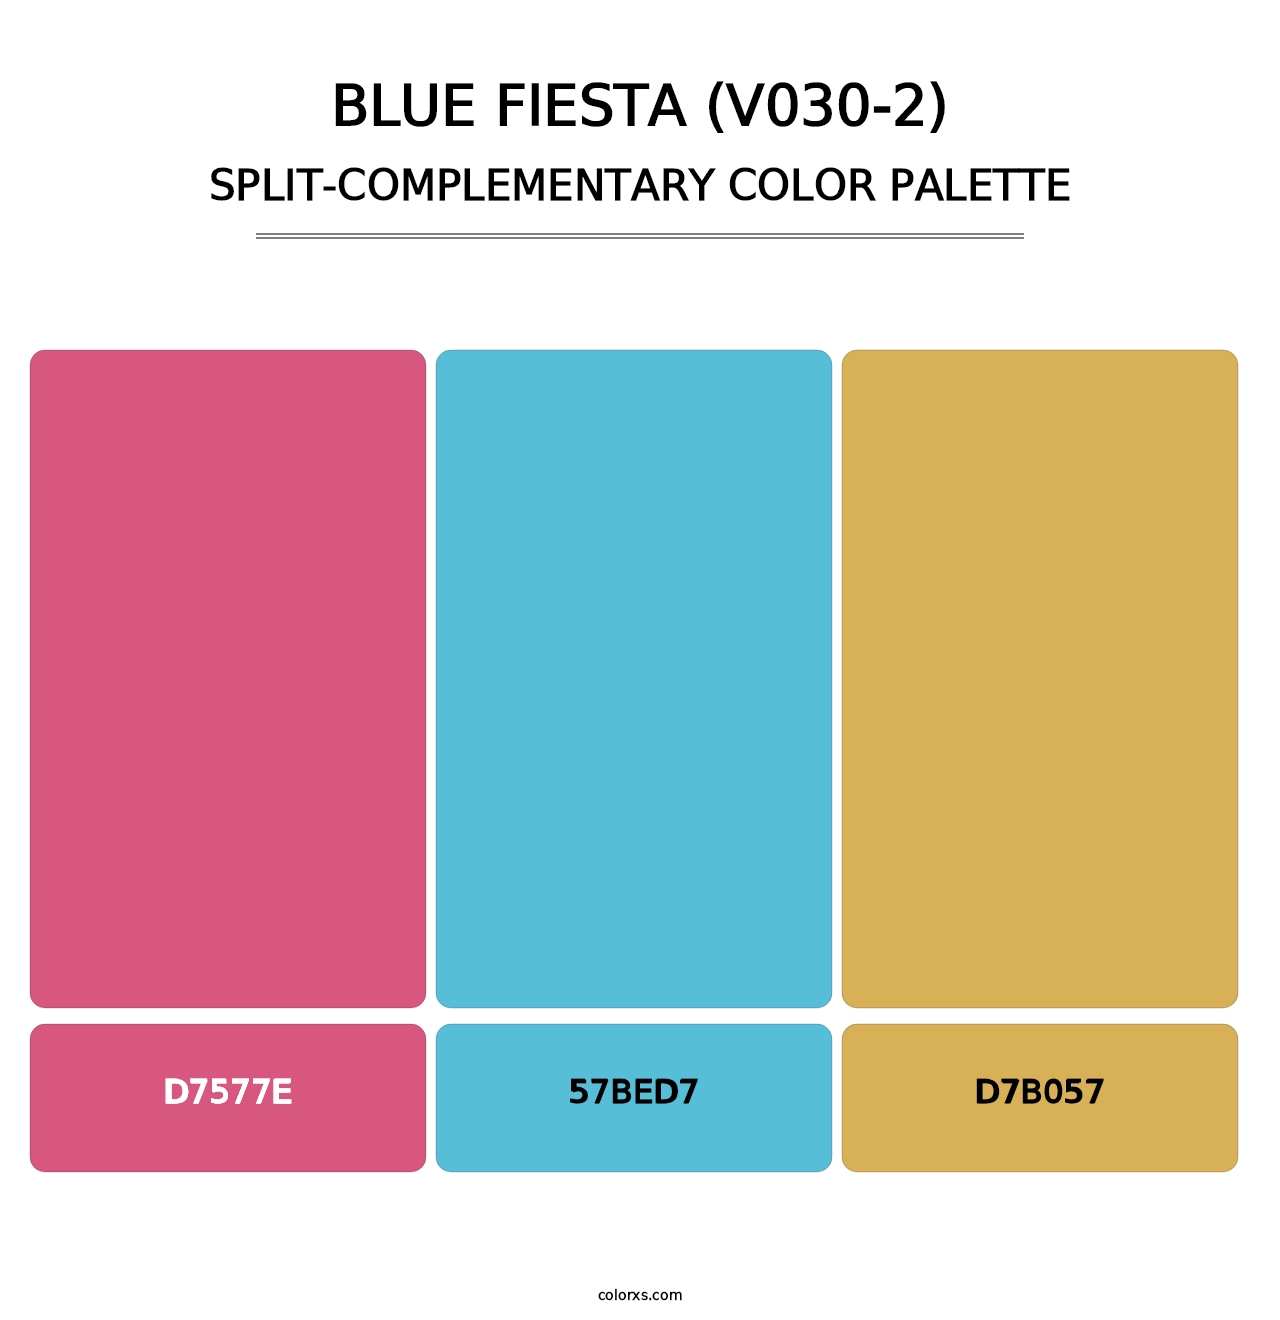 Blue Fiesta (V030-2) - Split-Complementary Color Palette